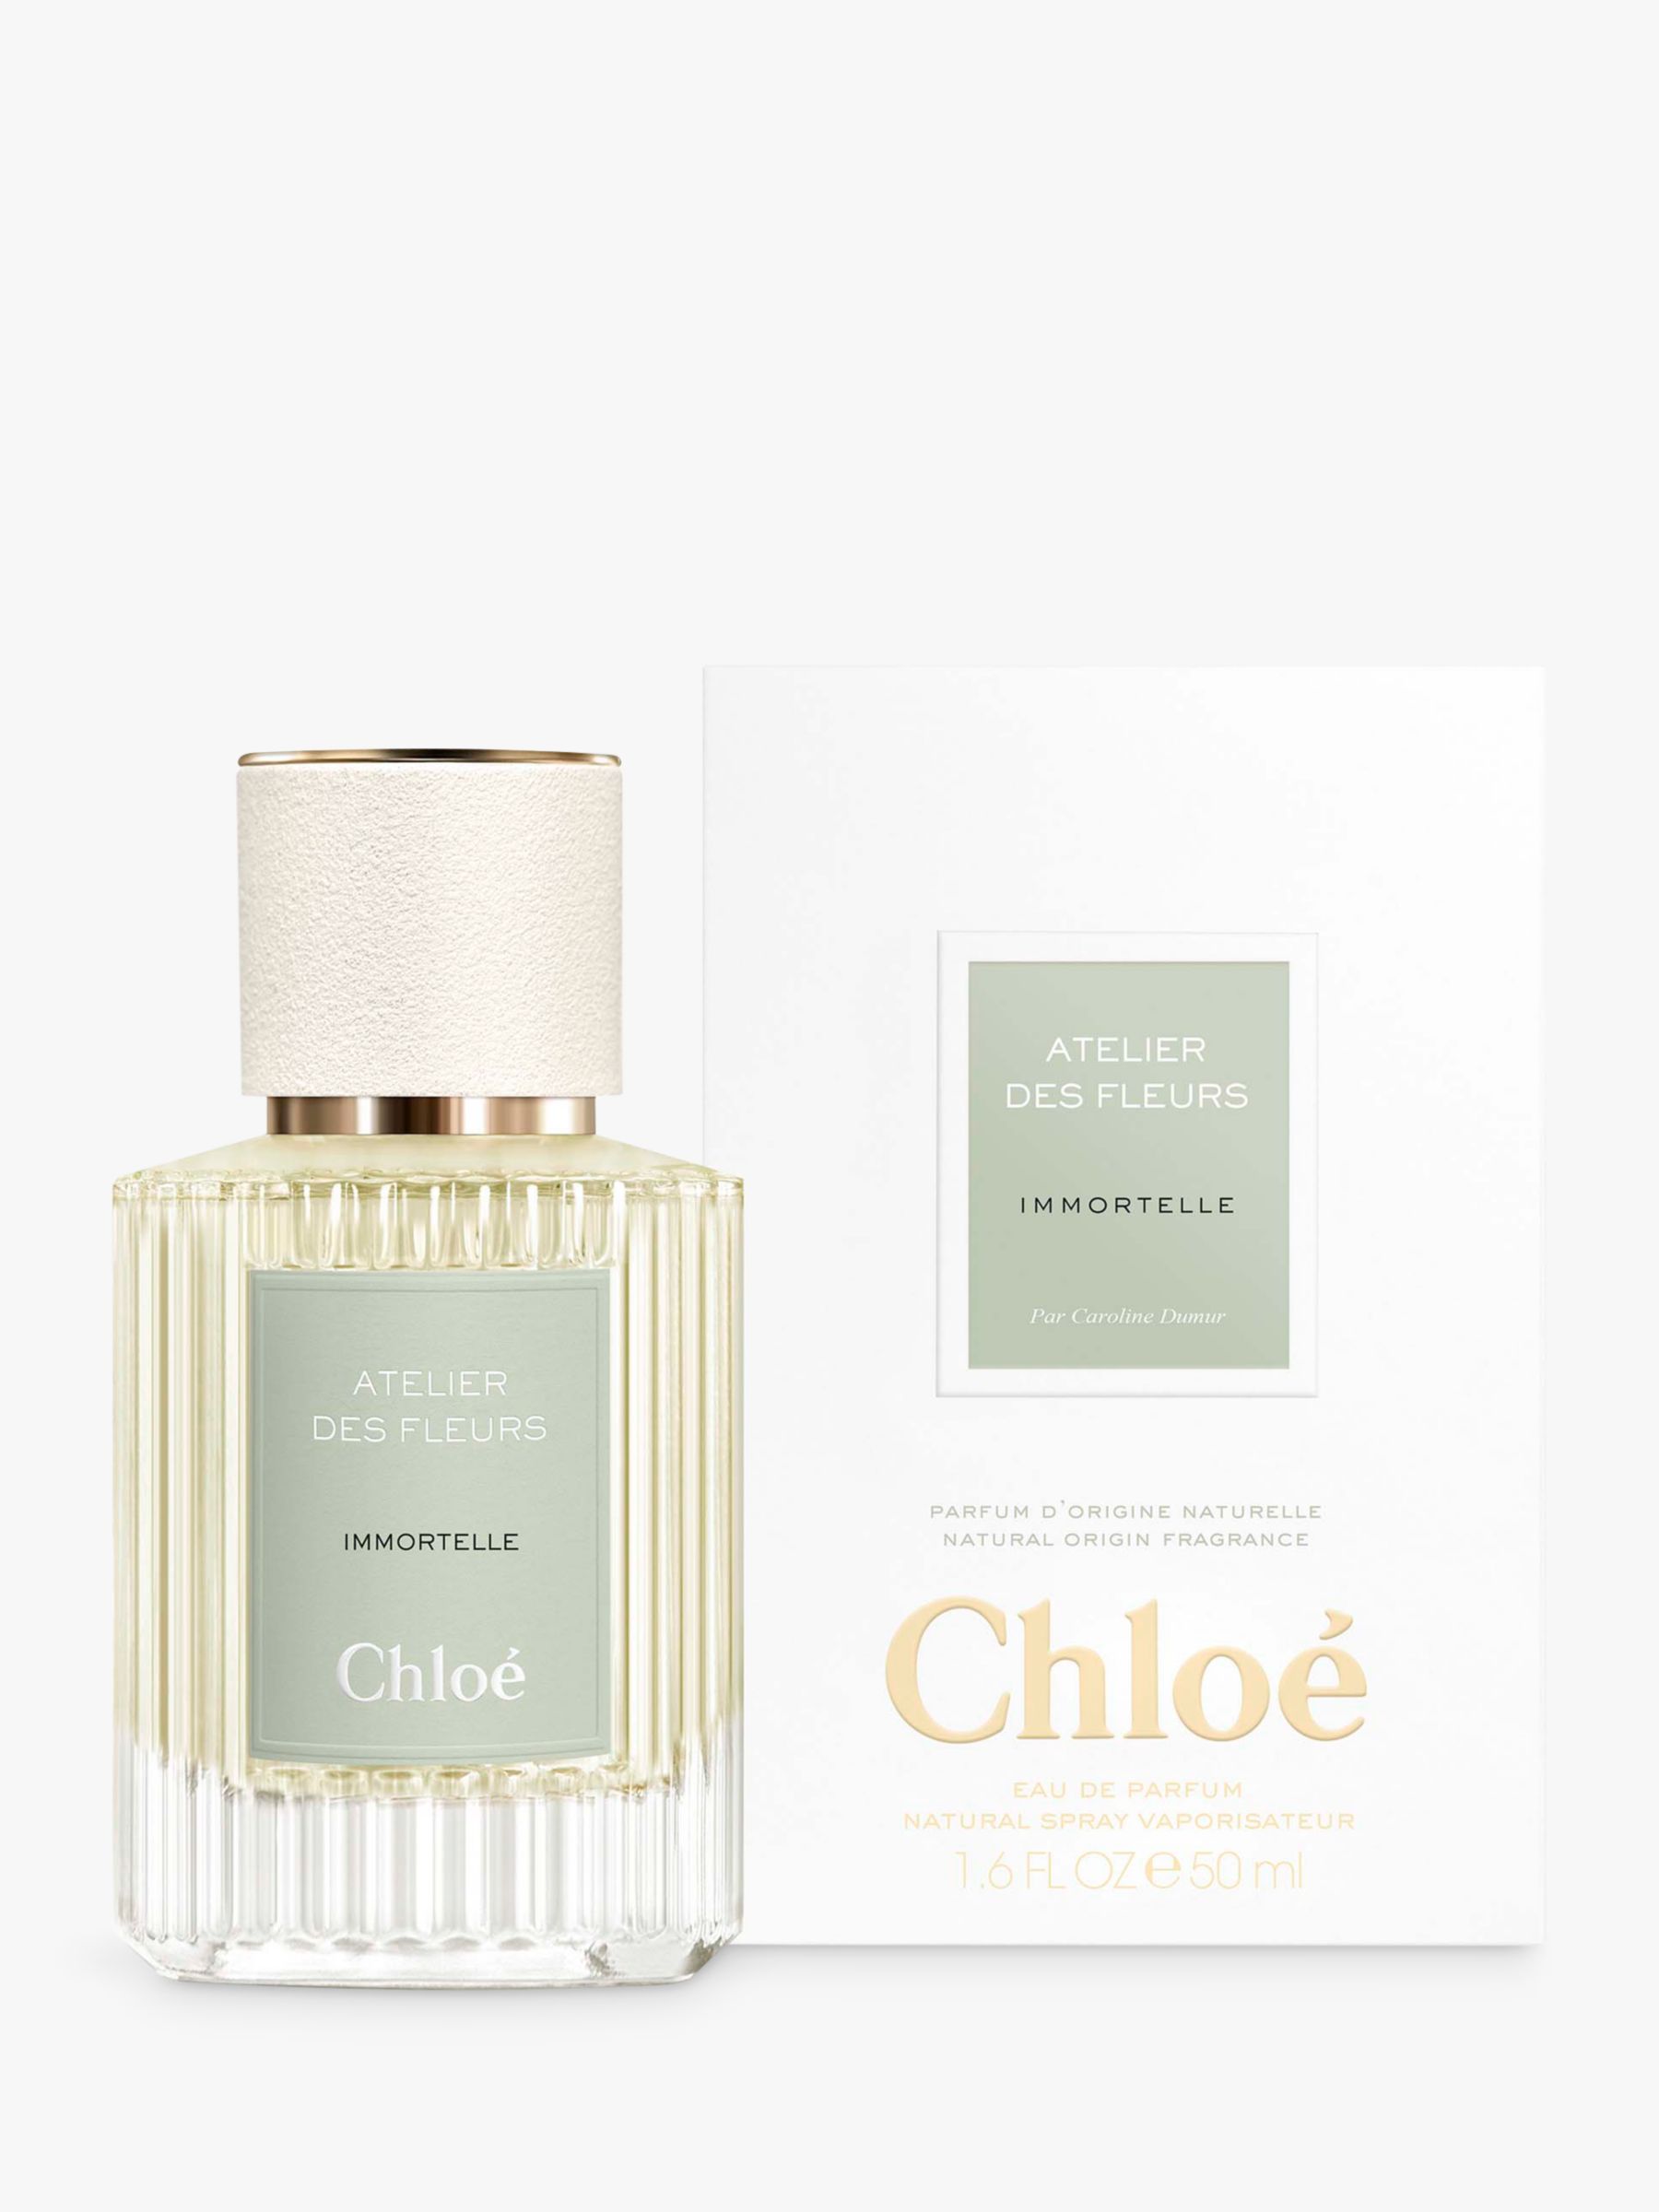 Chloé Atelier des Fleurs Immortelle Eau de Parfum, 50ml 2